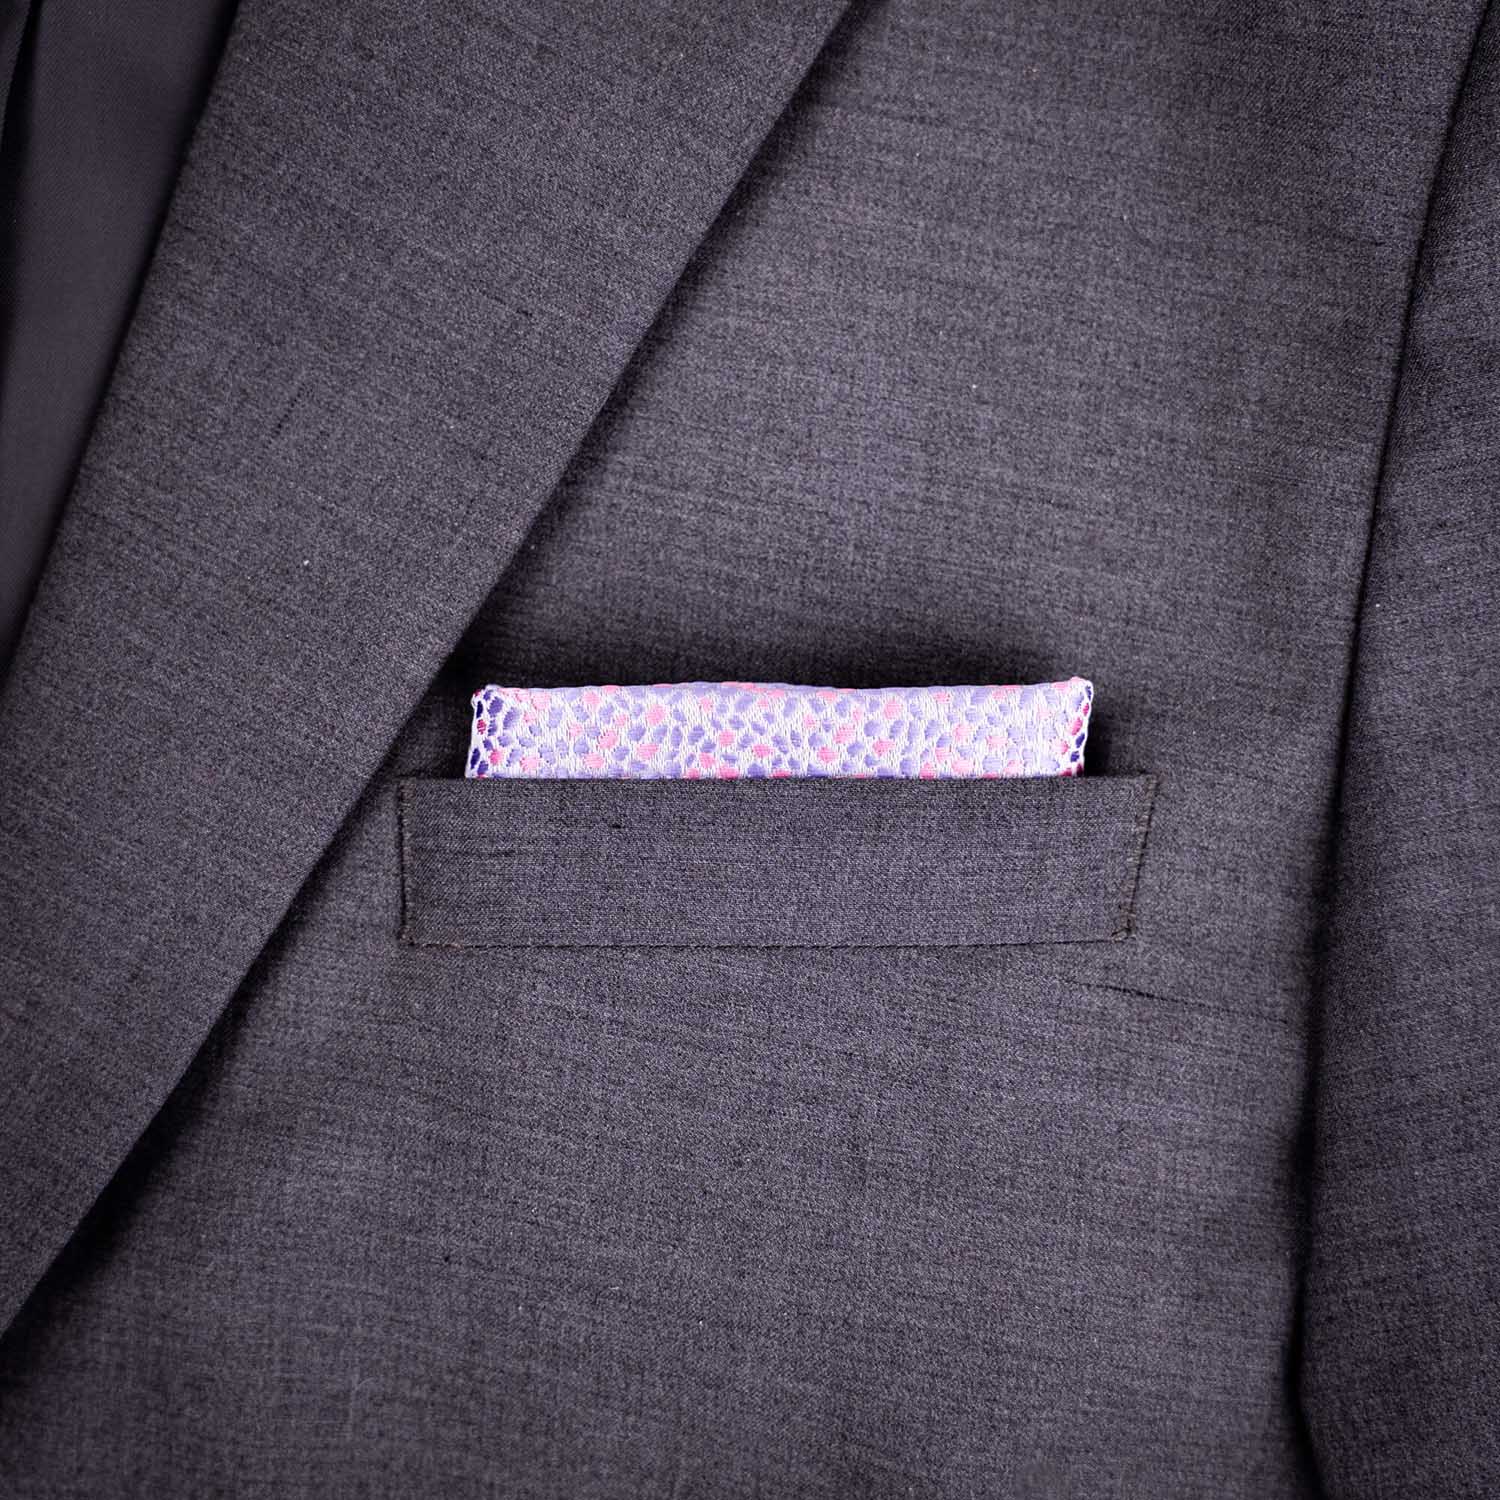 Light pink pocket square